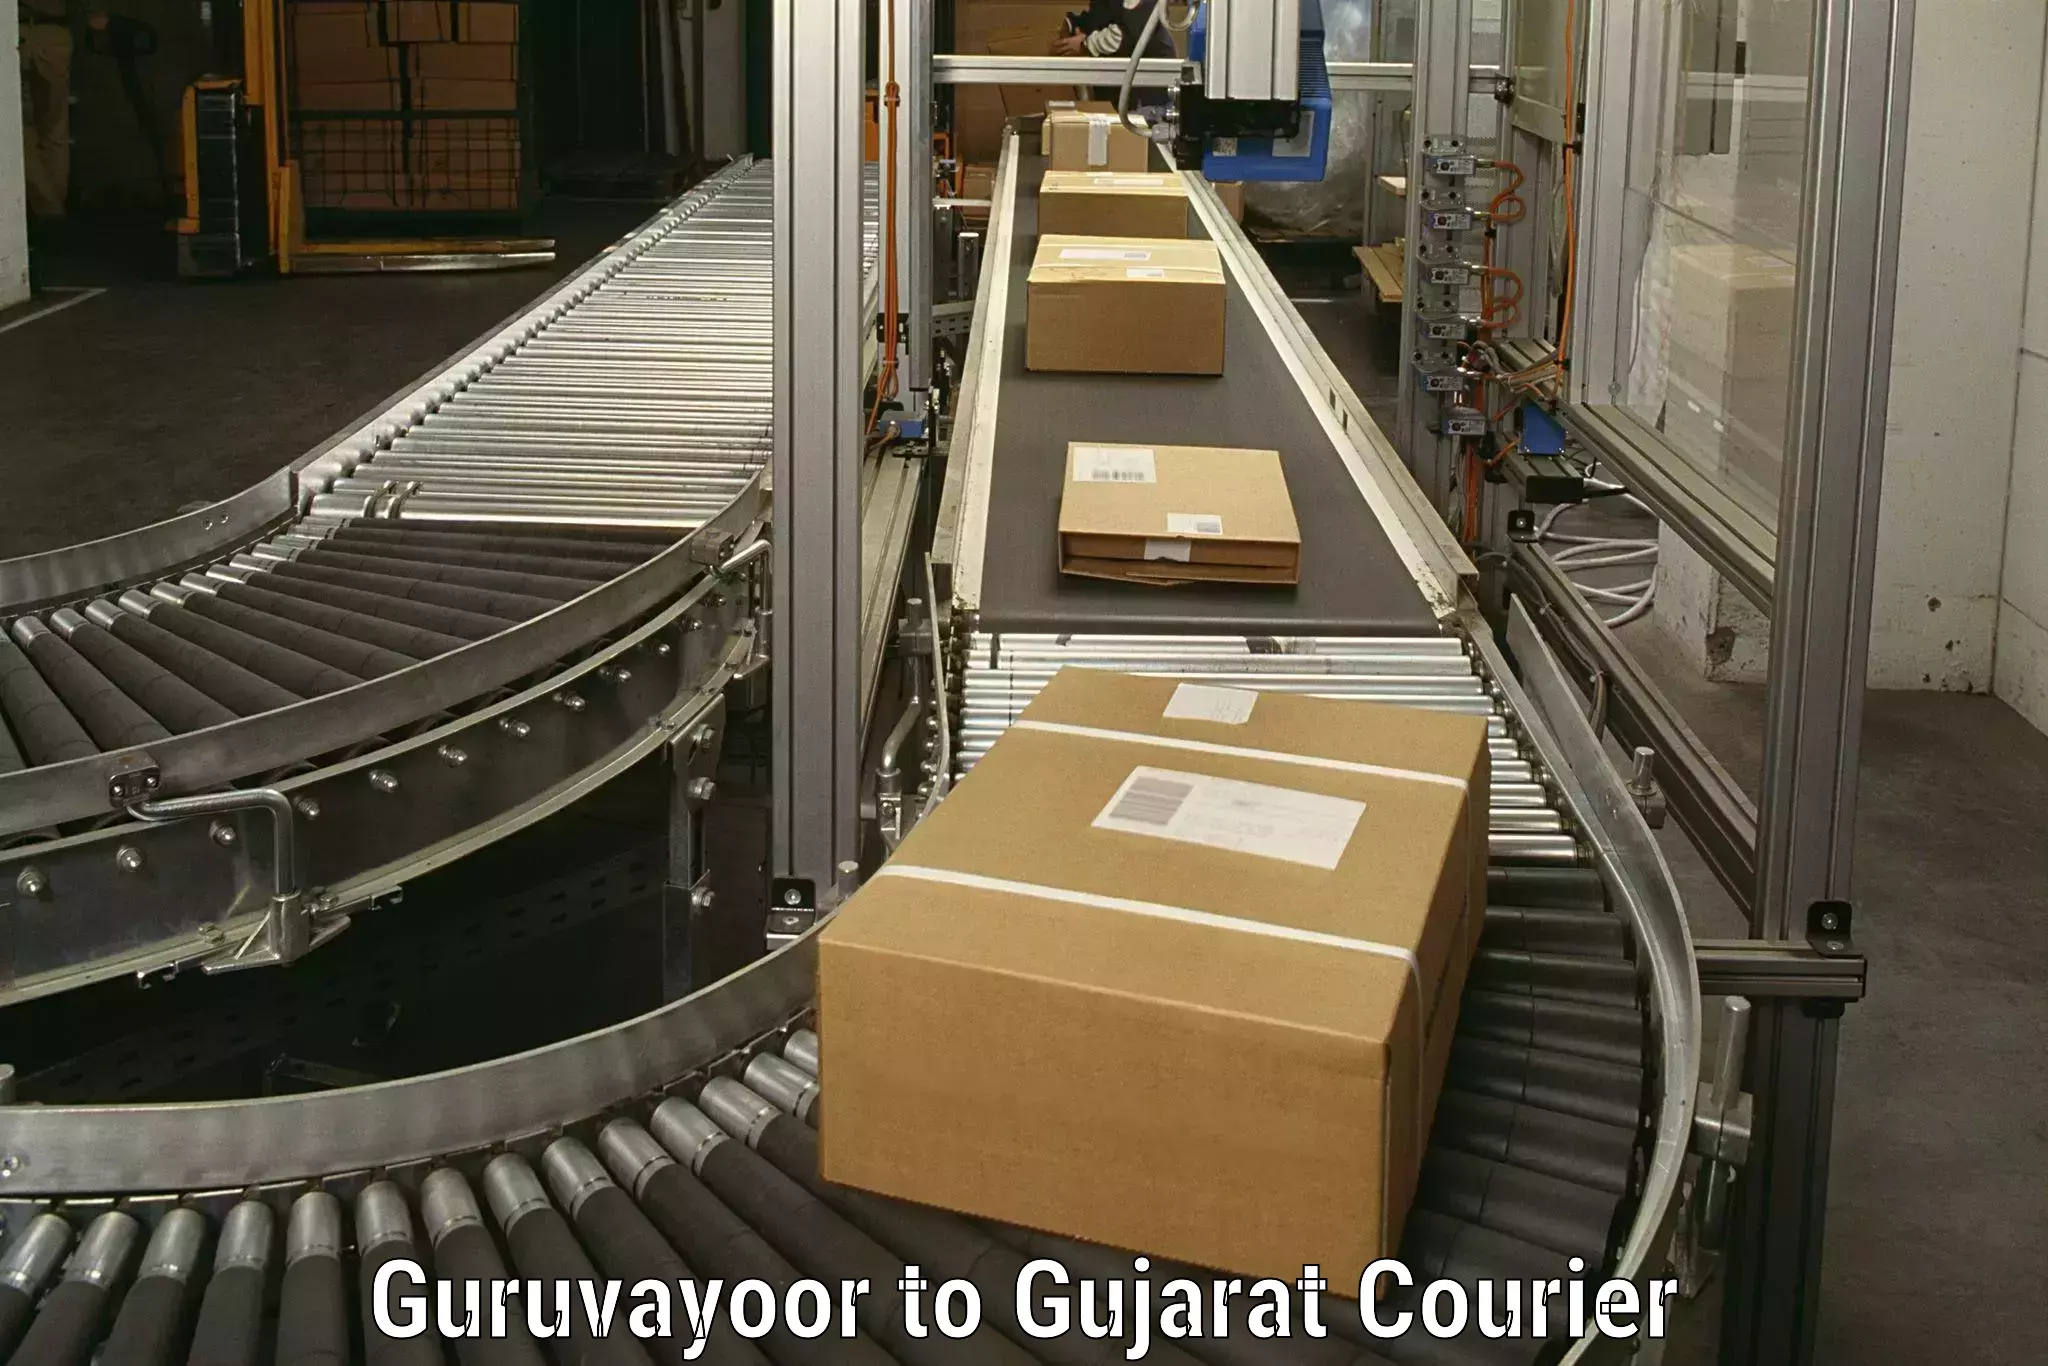 Professional movers and packers Guruvayoor to Nasvadi